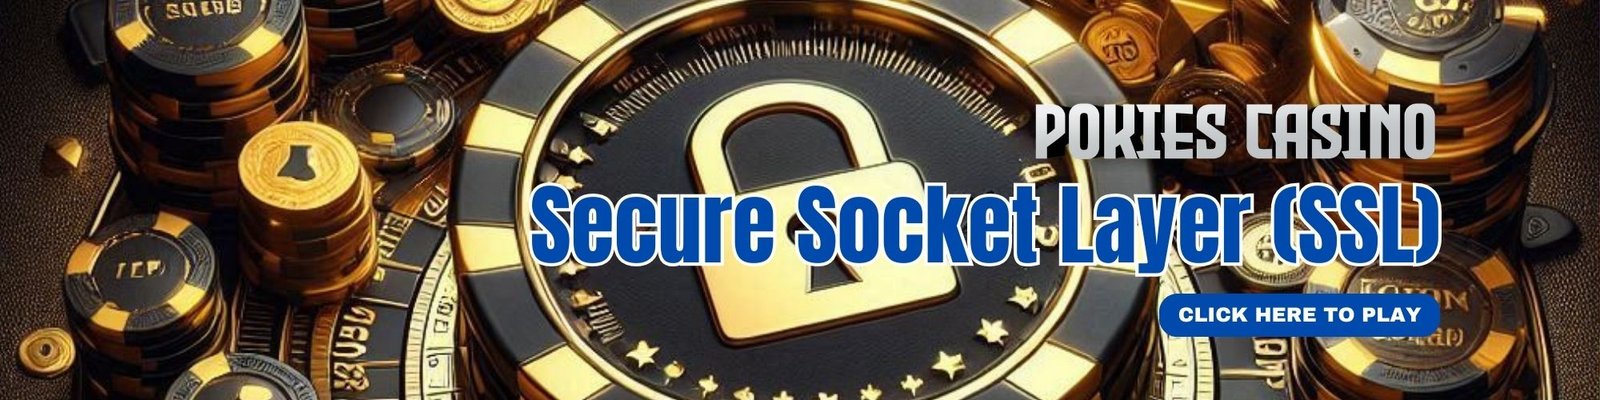 Secure Socket Layer (SSL) in PokiesCasino